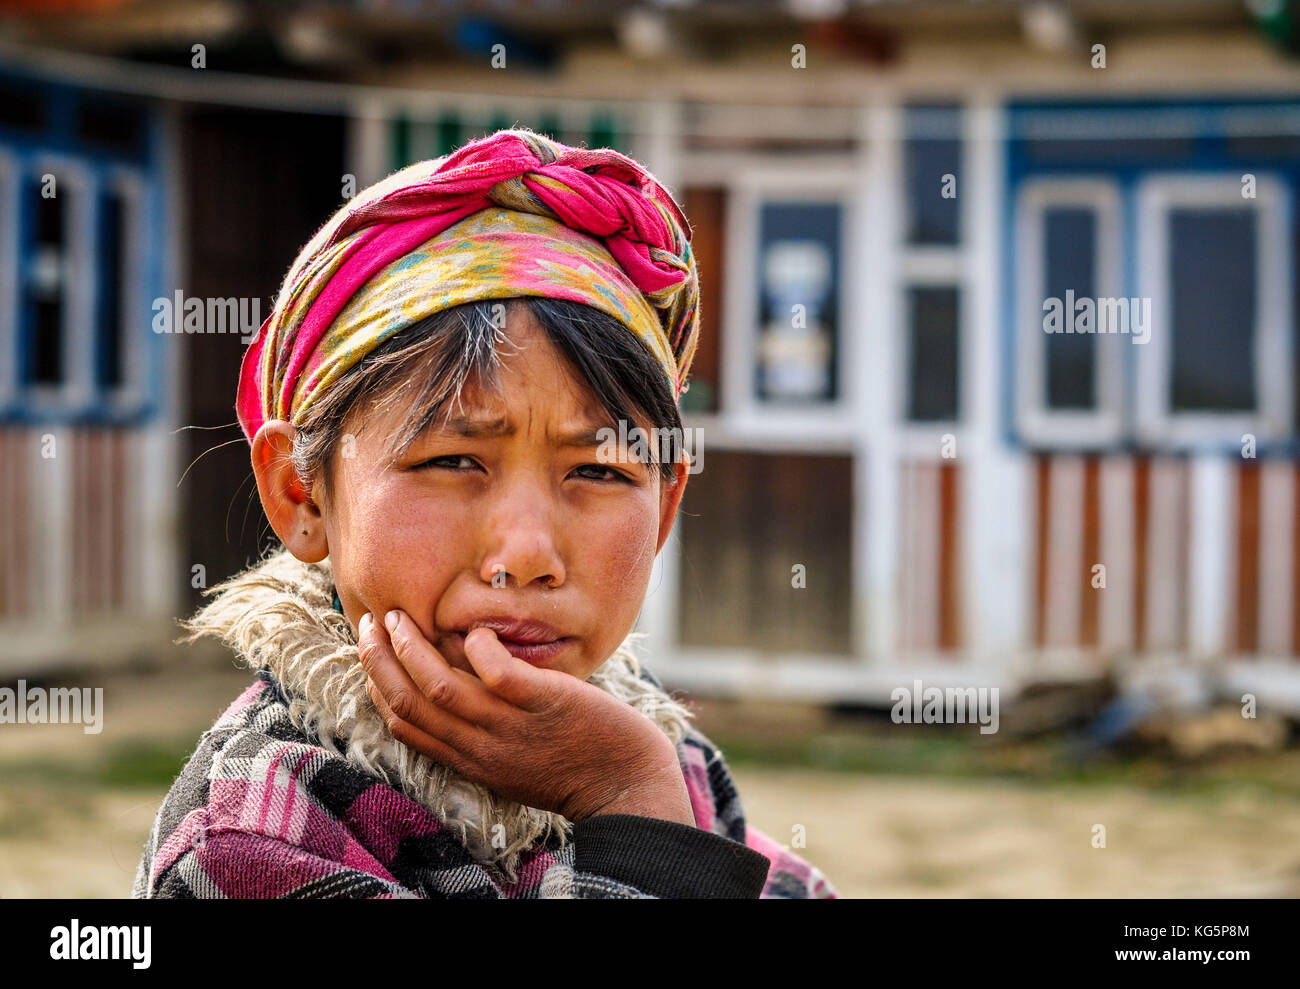 Ritratto di giovane ragazza, distretto rasuwa, regione bagmati, Nepal, asia Foto Stock